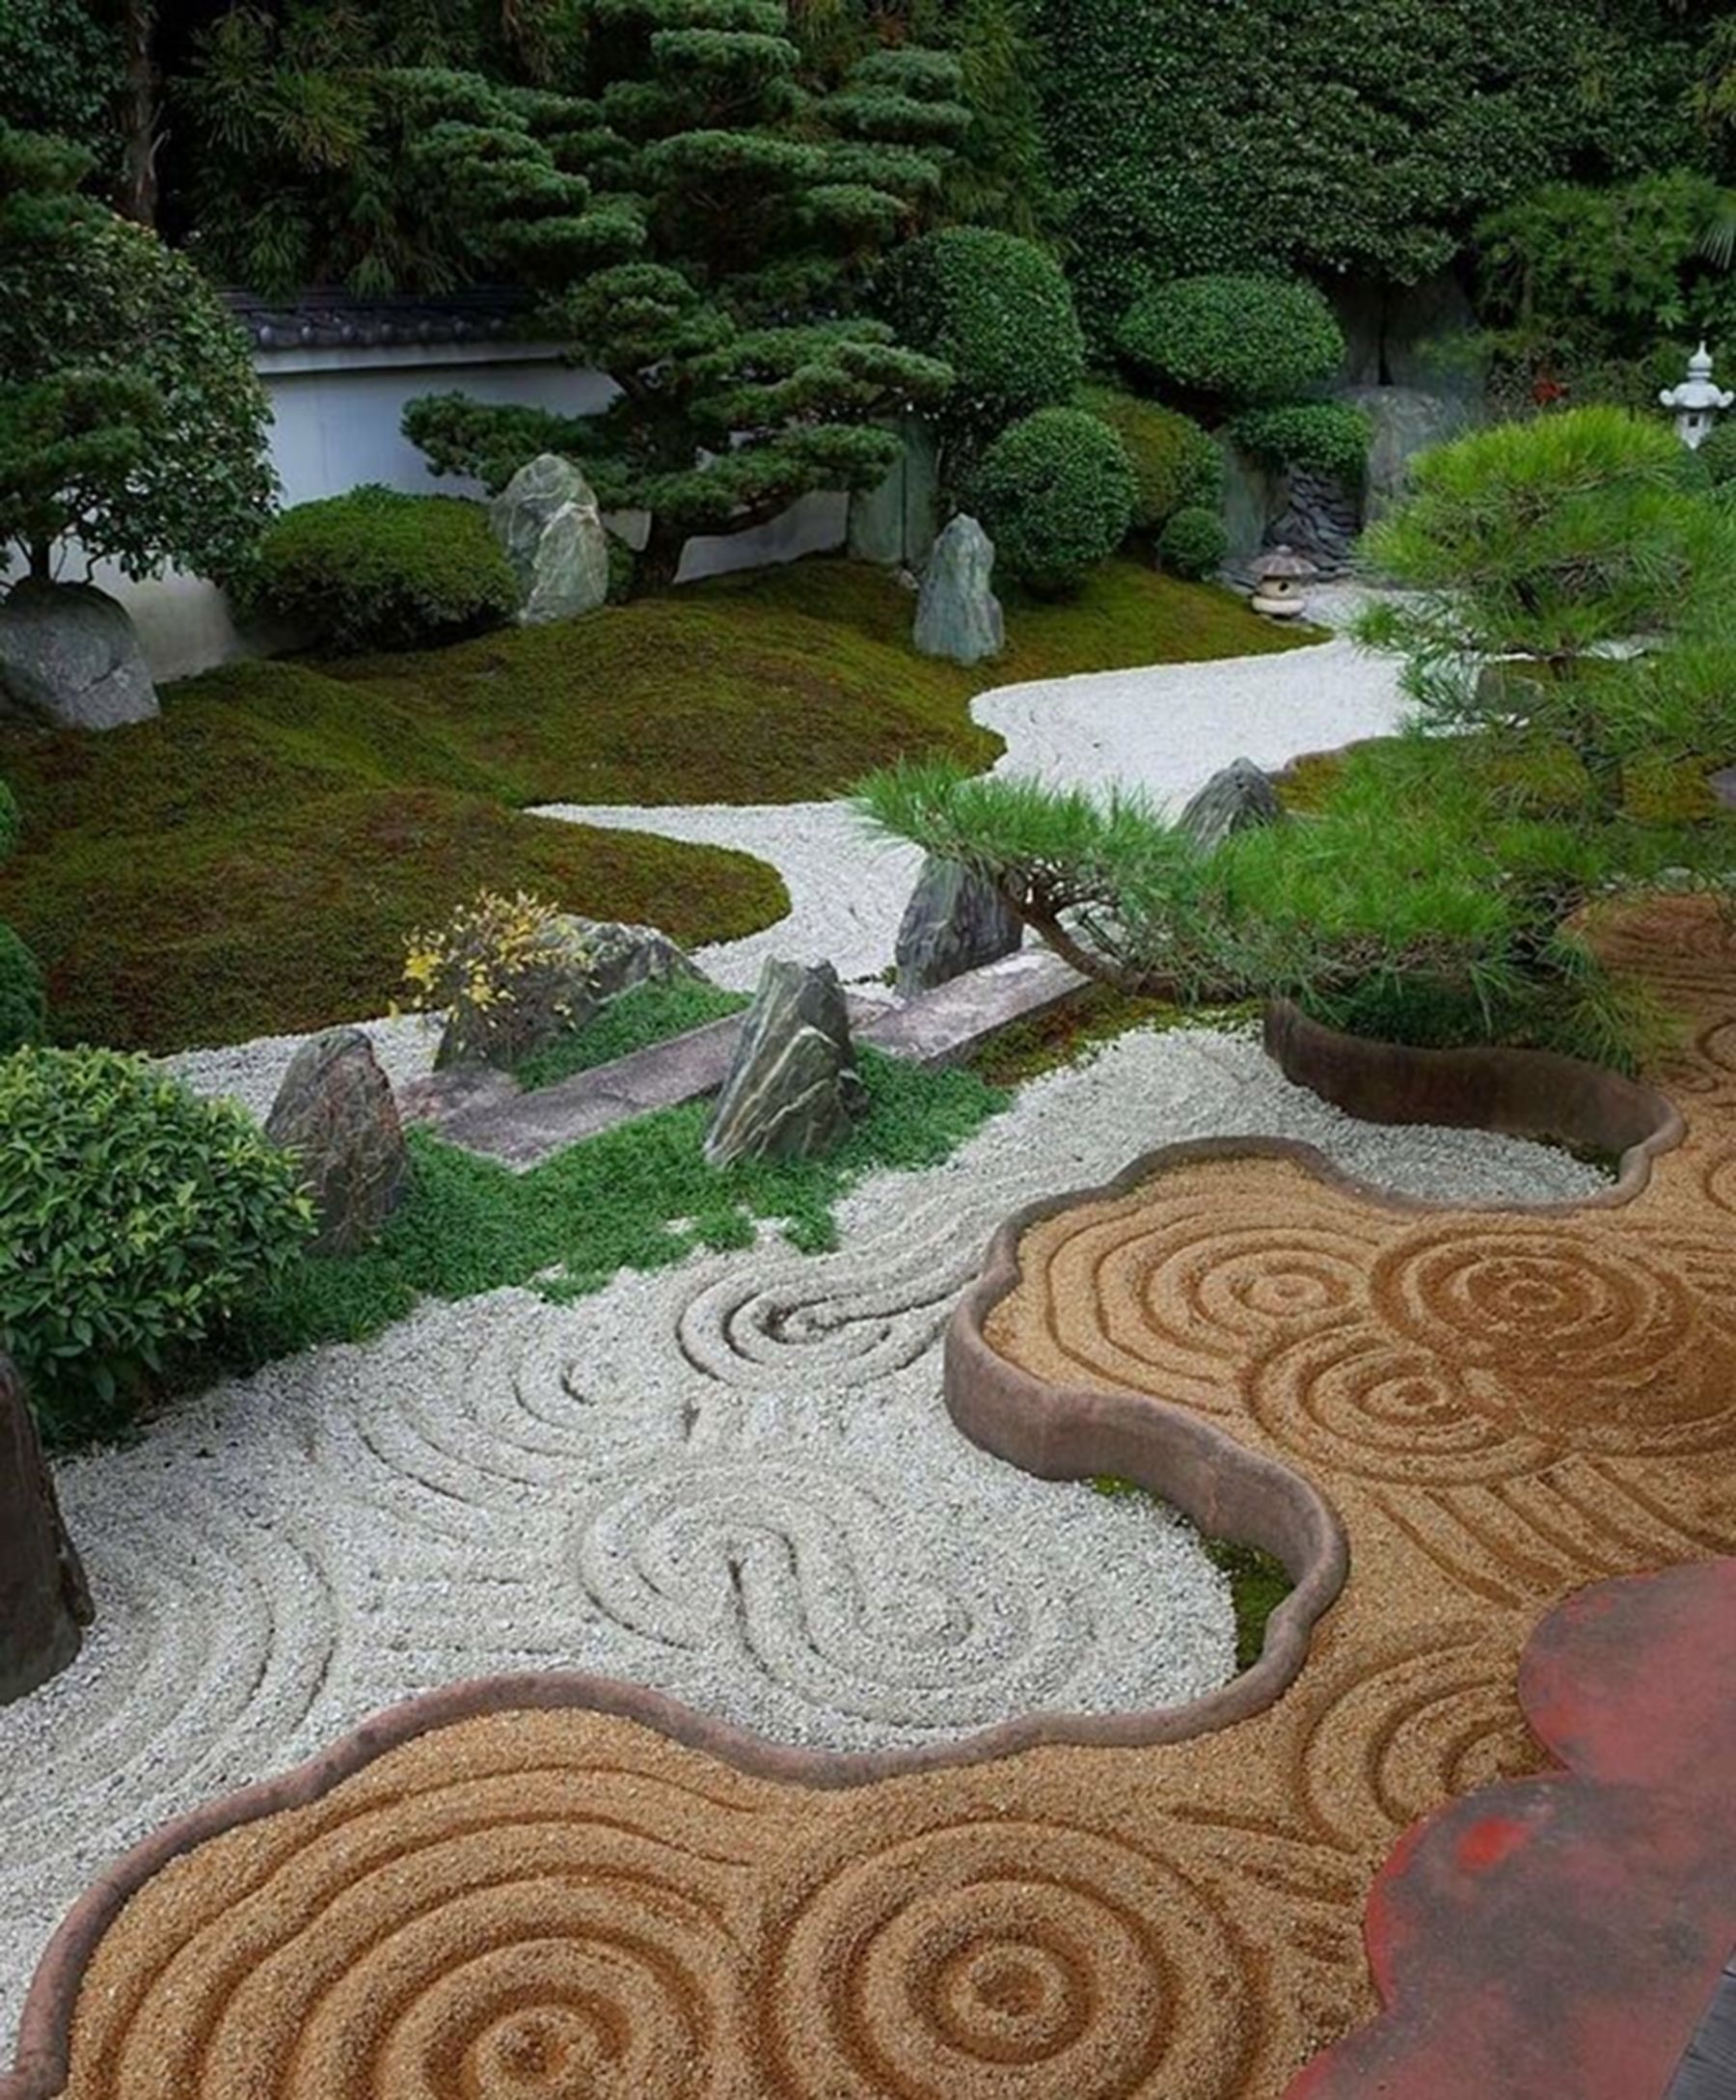 Japanesegardening Zen Rock Garden